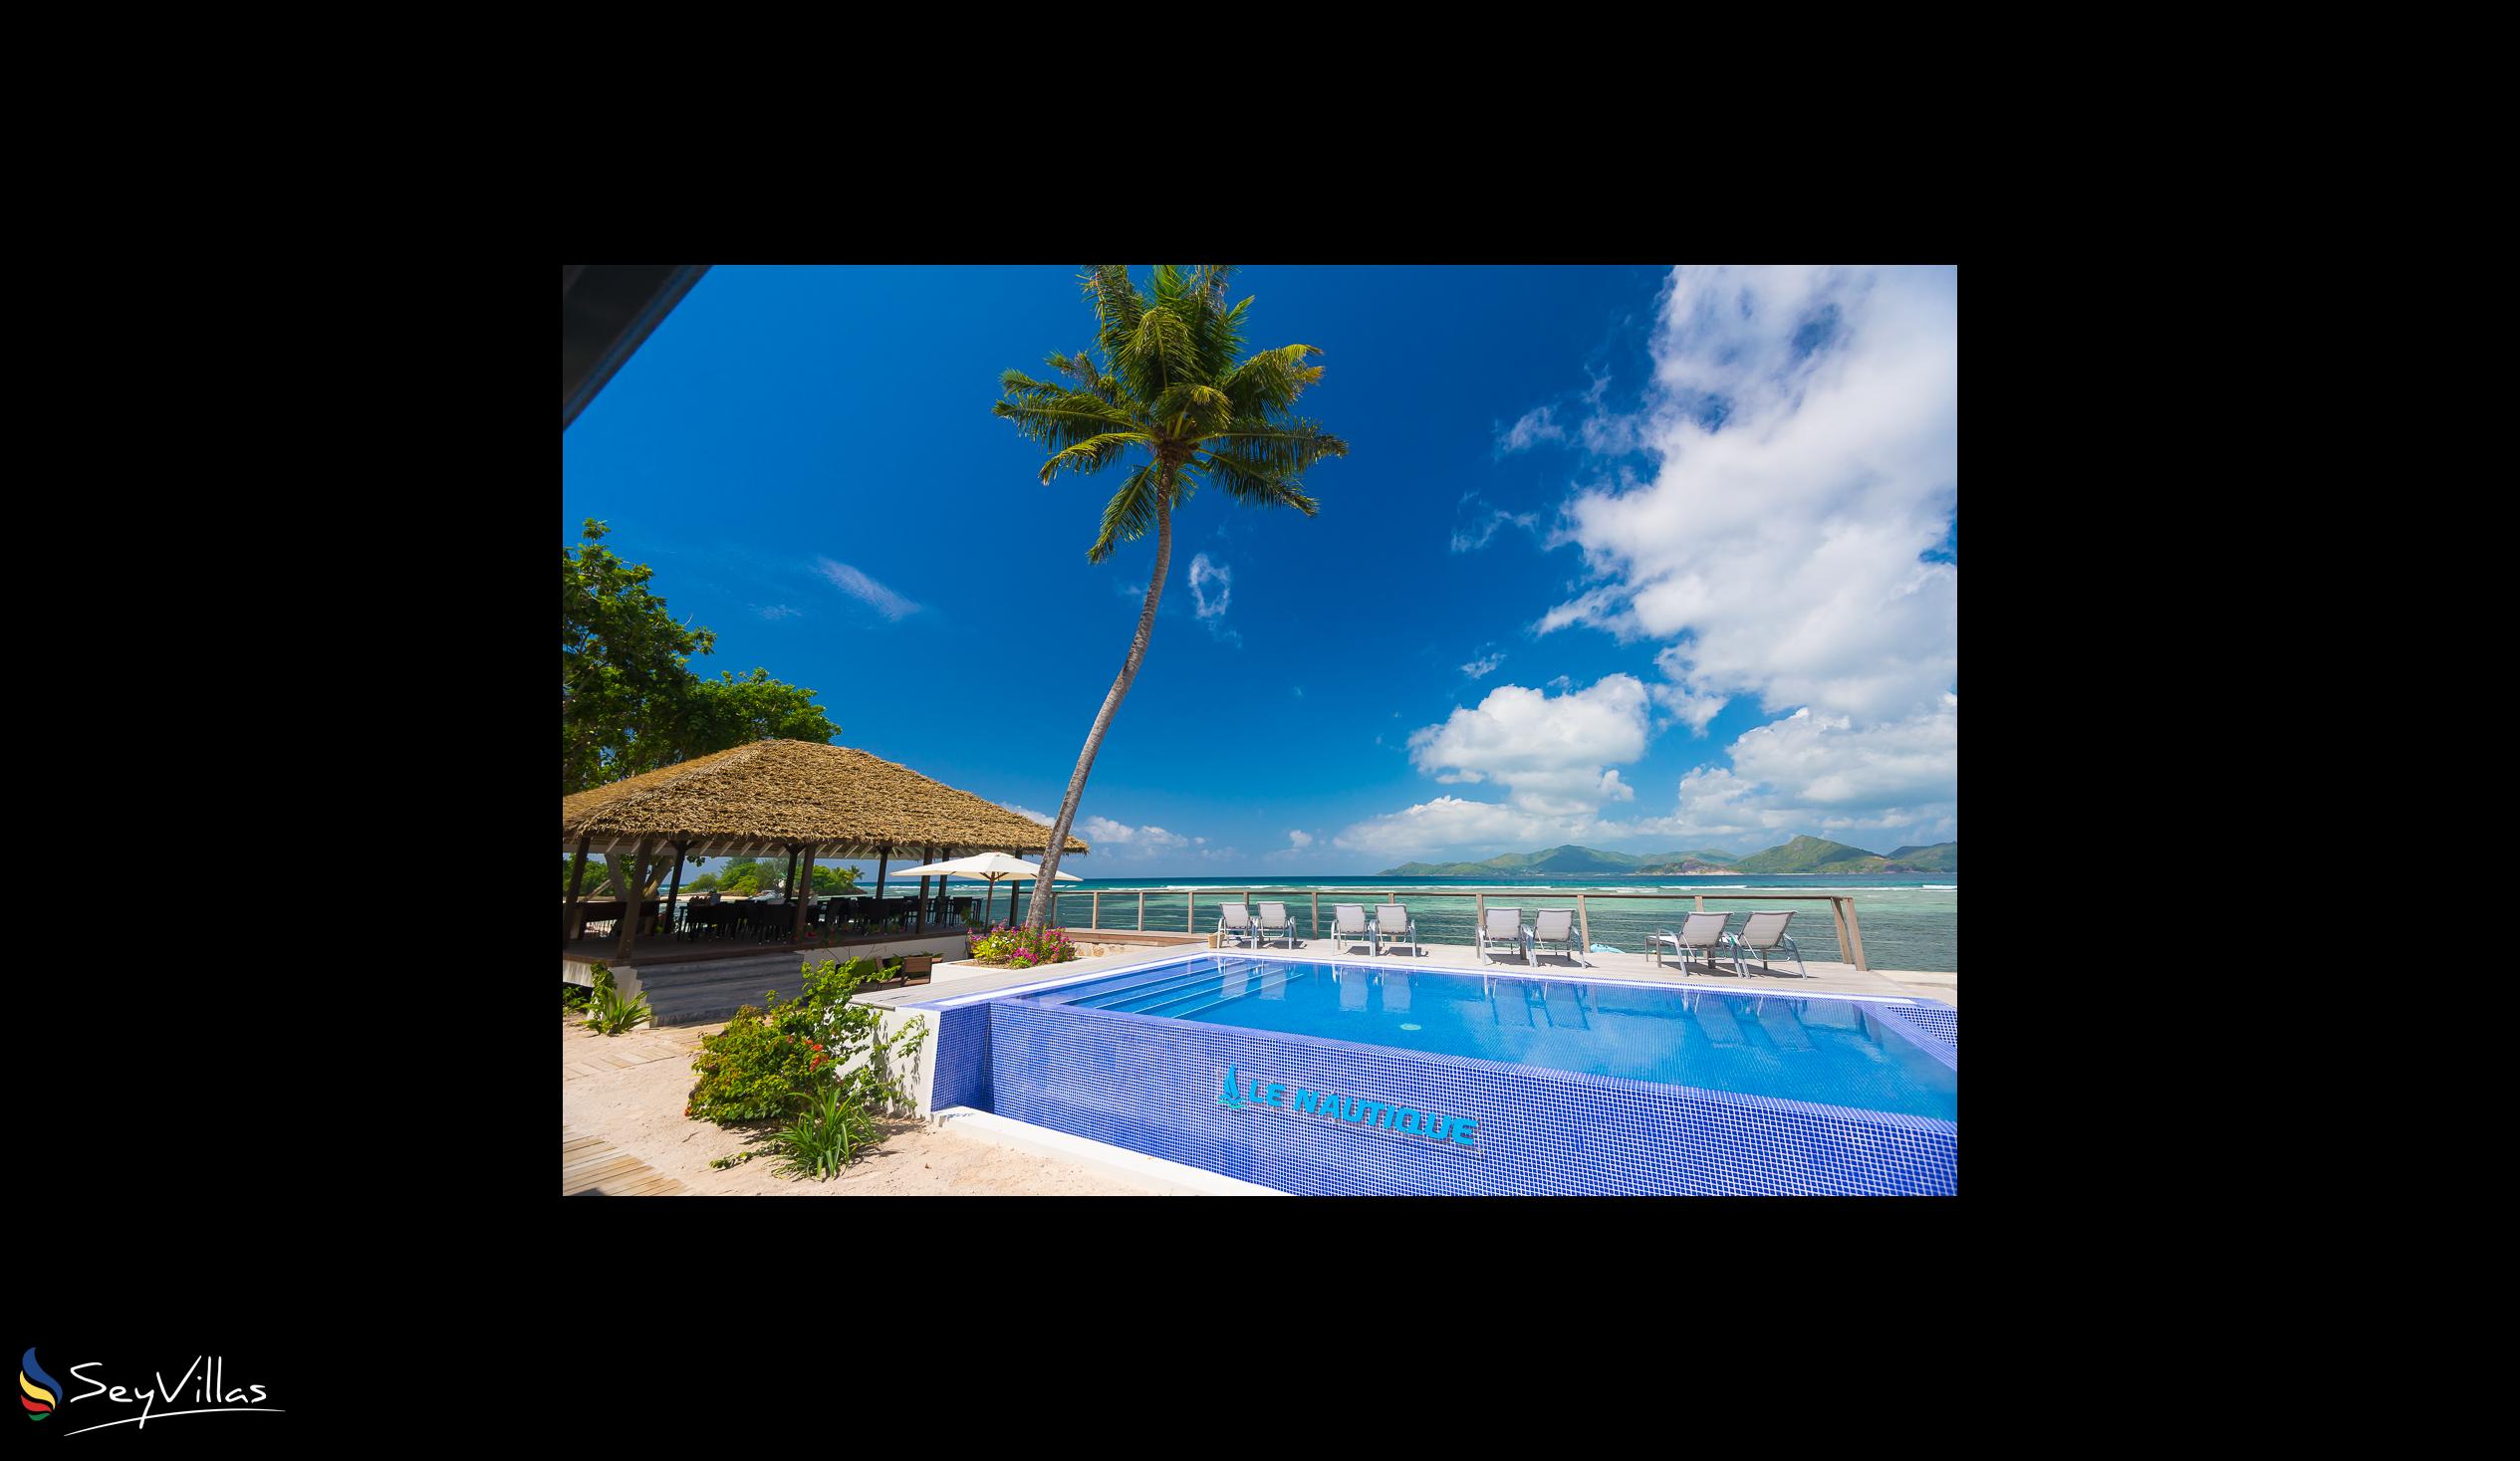 Foto 30: Le Nautique Luxury Waterfront Hotel - Aussenbereich - La Digue (Seychellen)